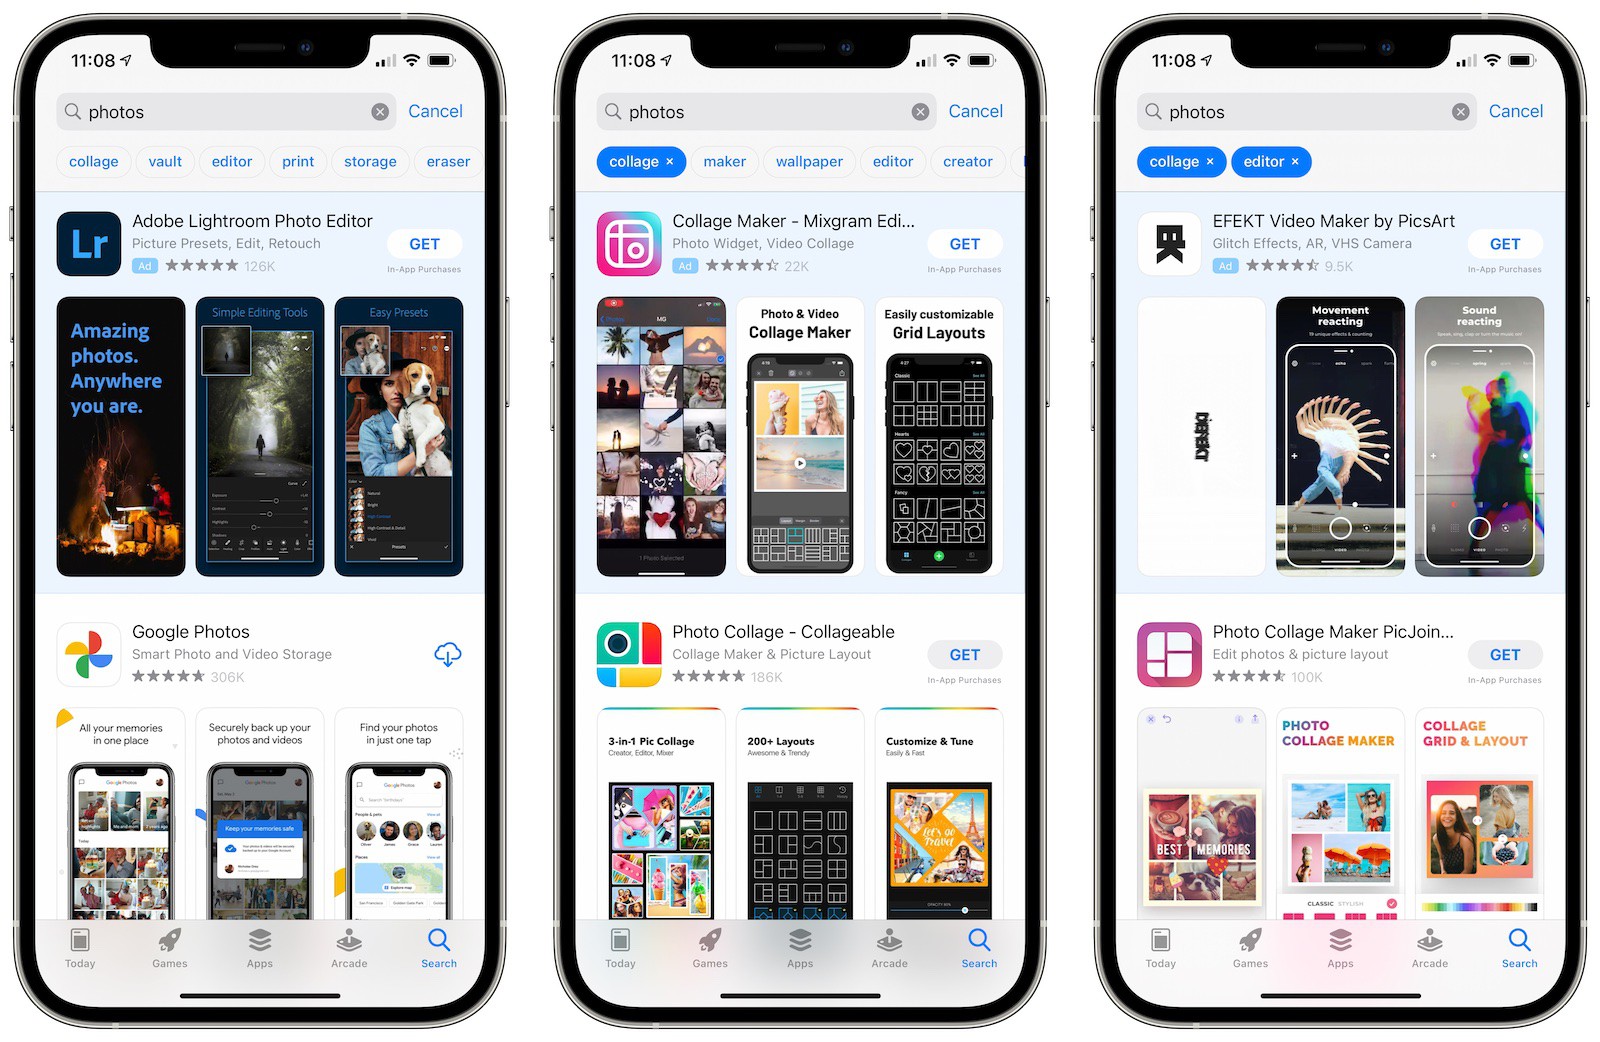 Az Apple tervei szerint több helyen lesz reklám az App Store-ban